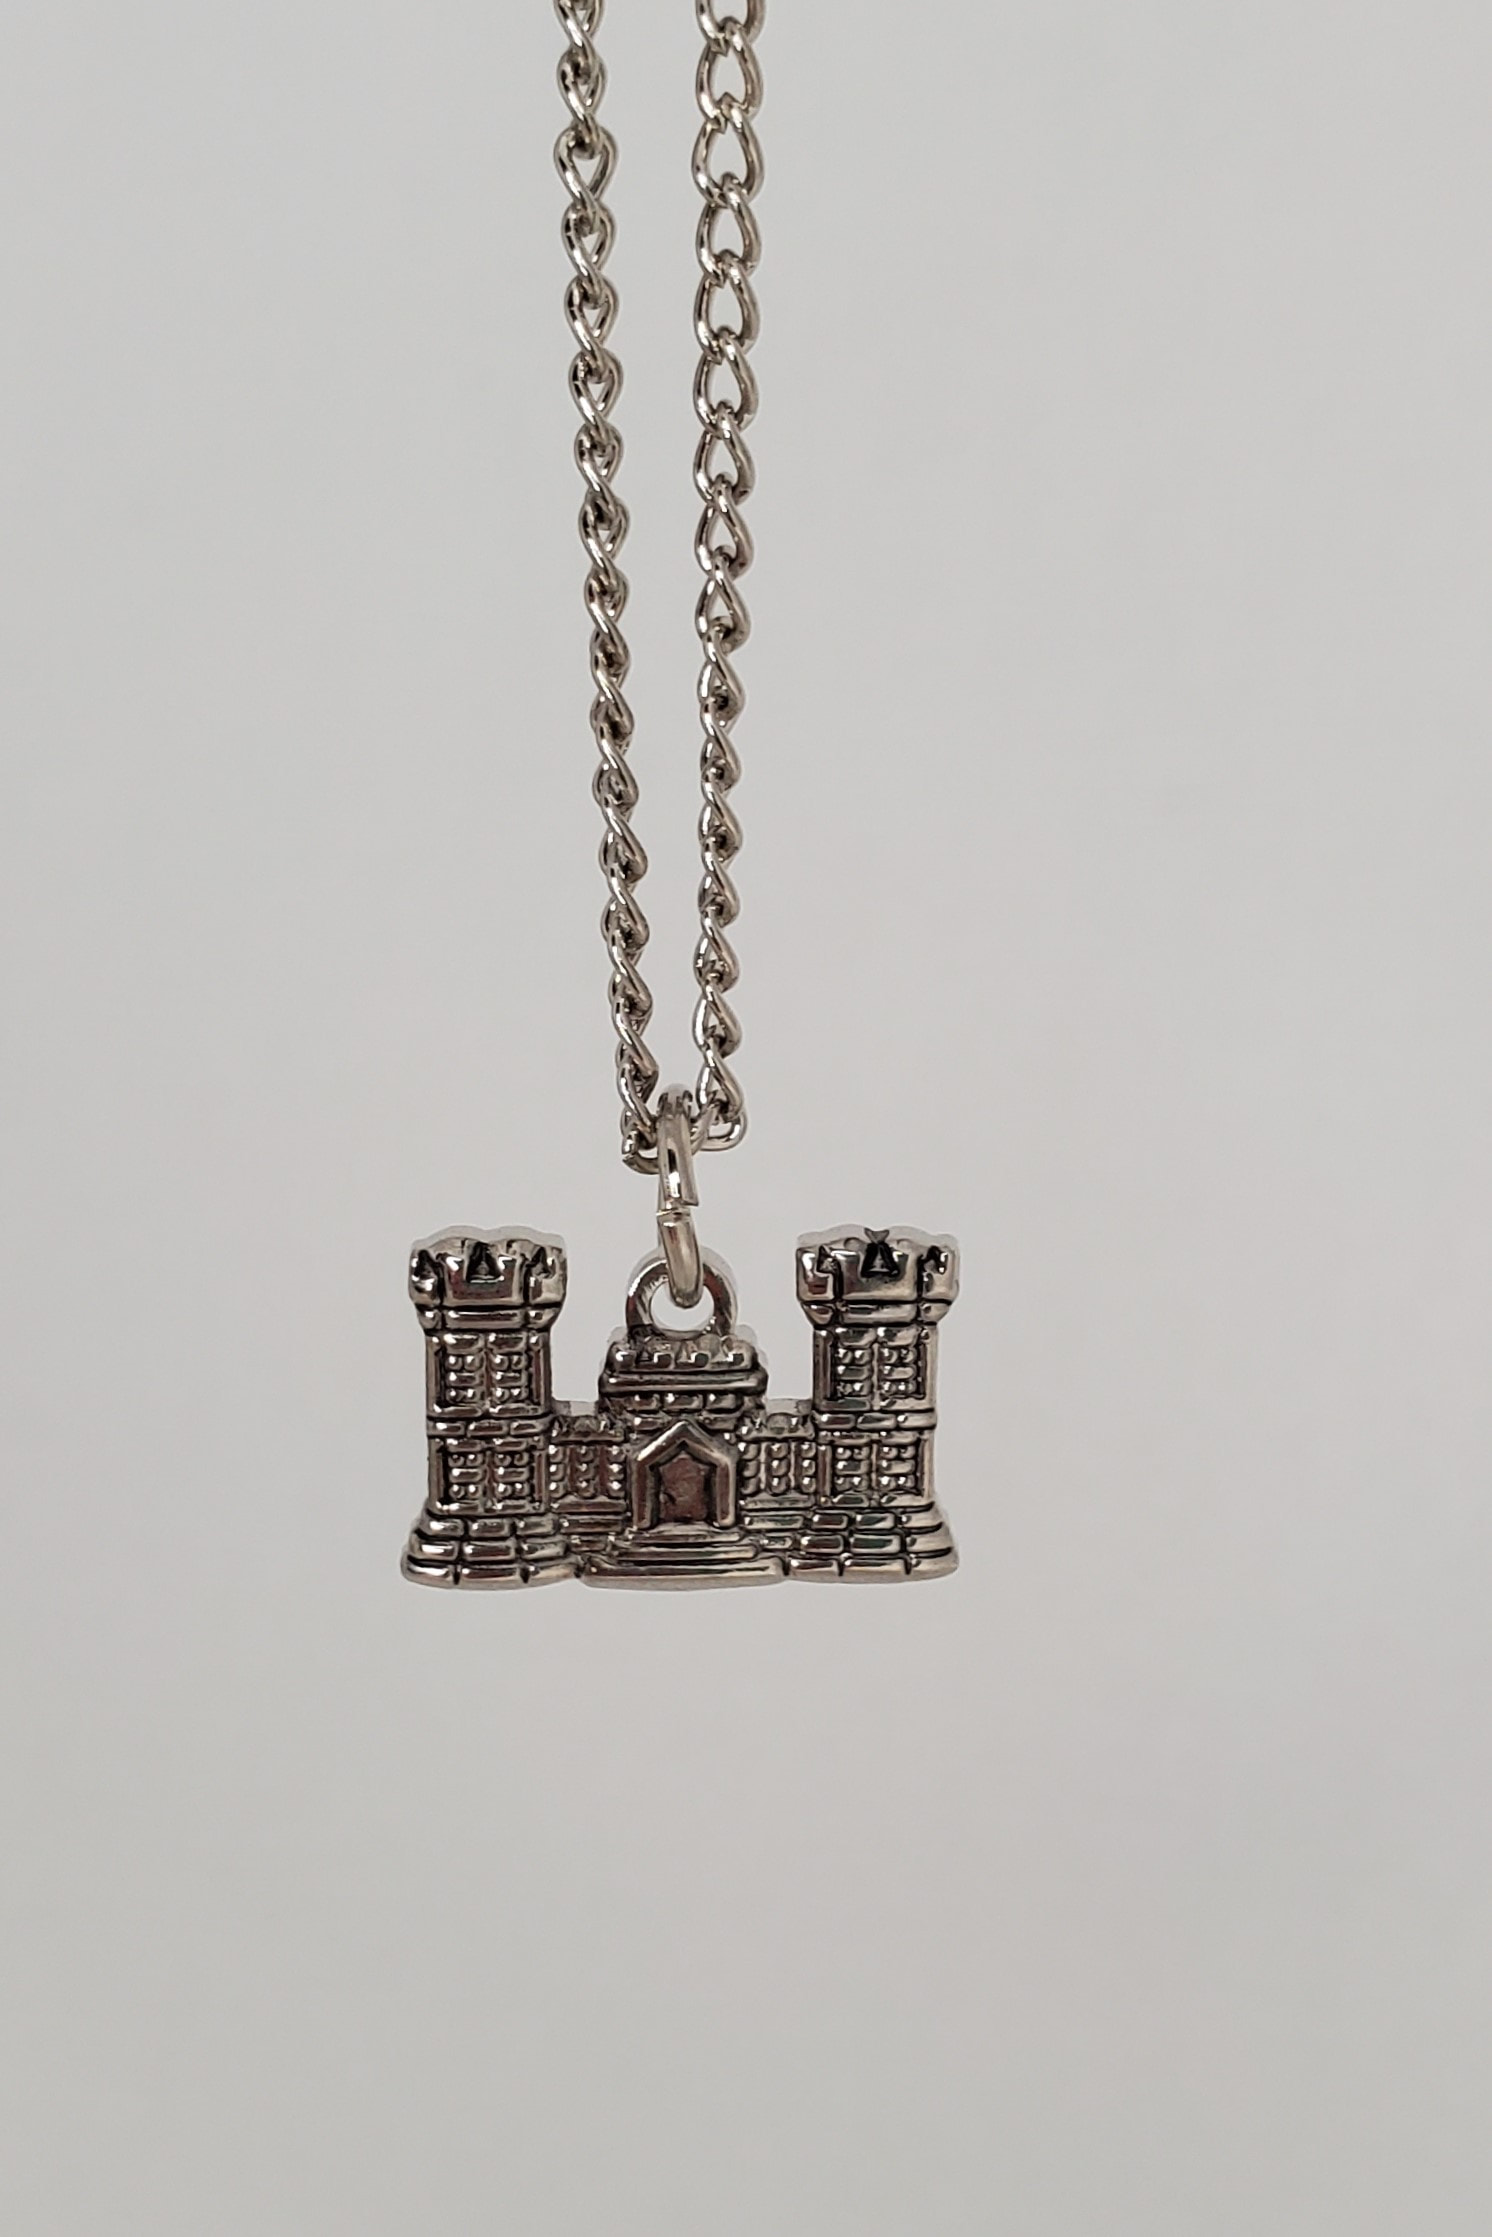 Castle Necklace hoop silver castle pendant